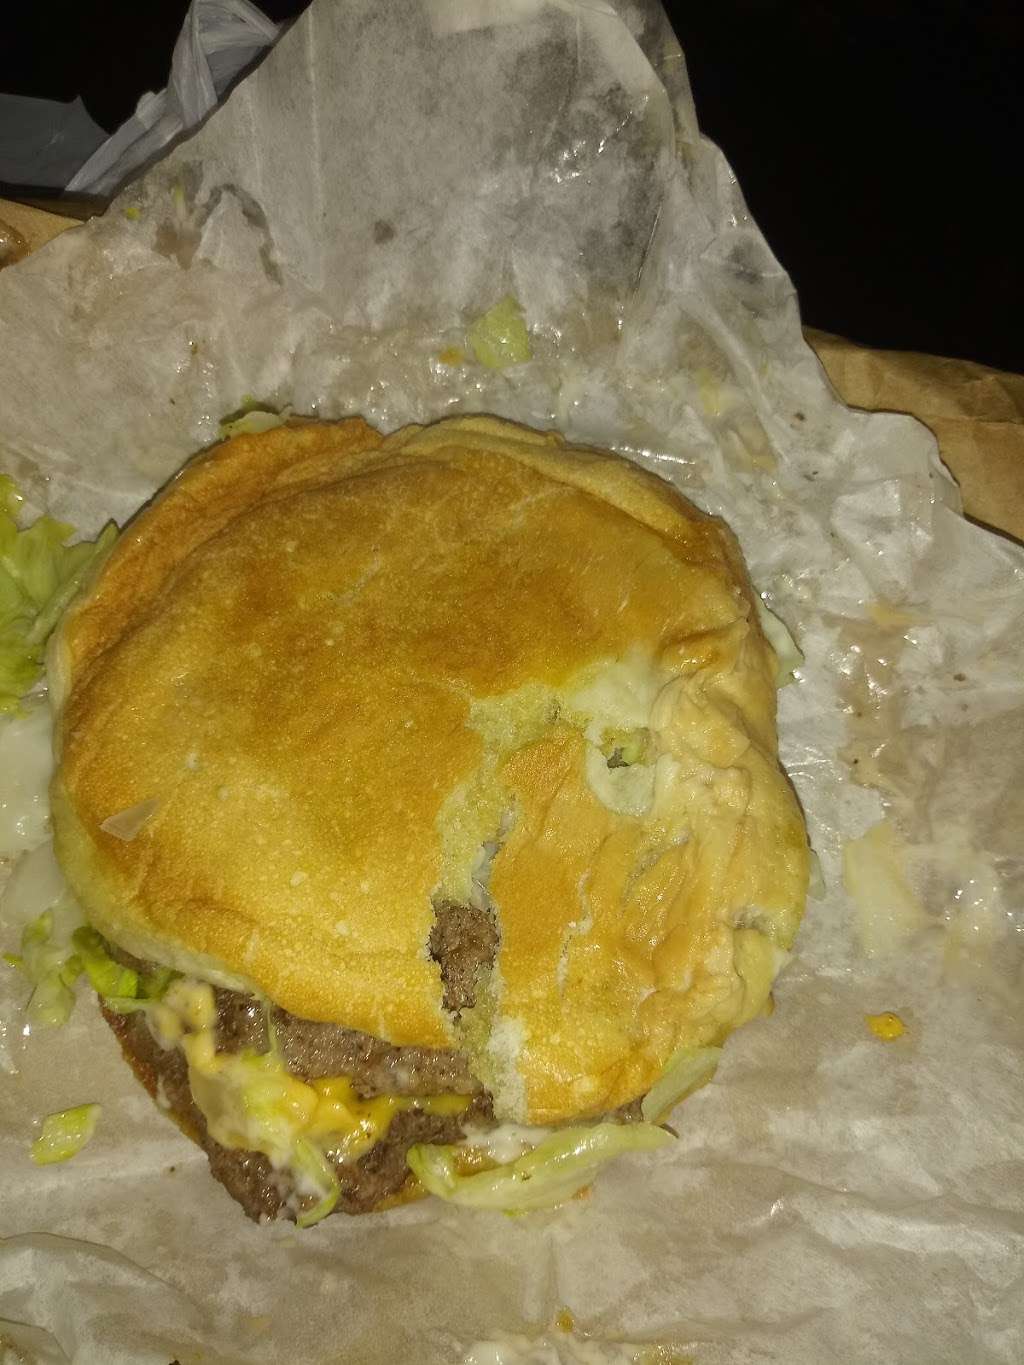 Red Top burgers | 500 N Brooks St, Brazoria, TX 77422, USA